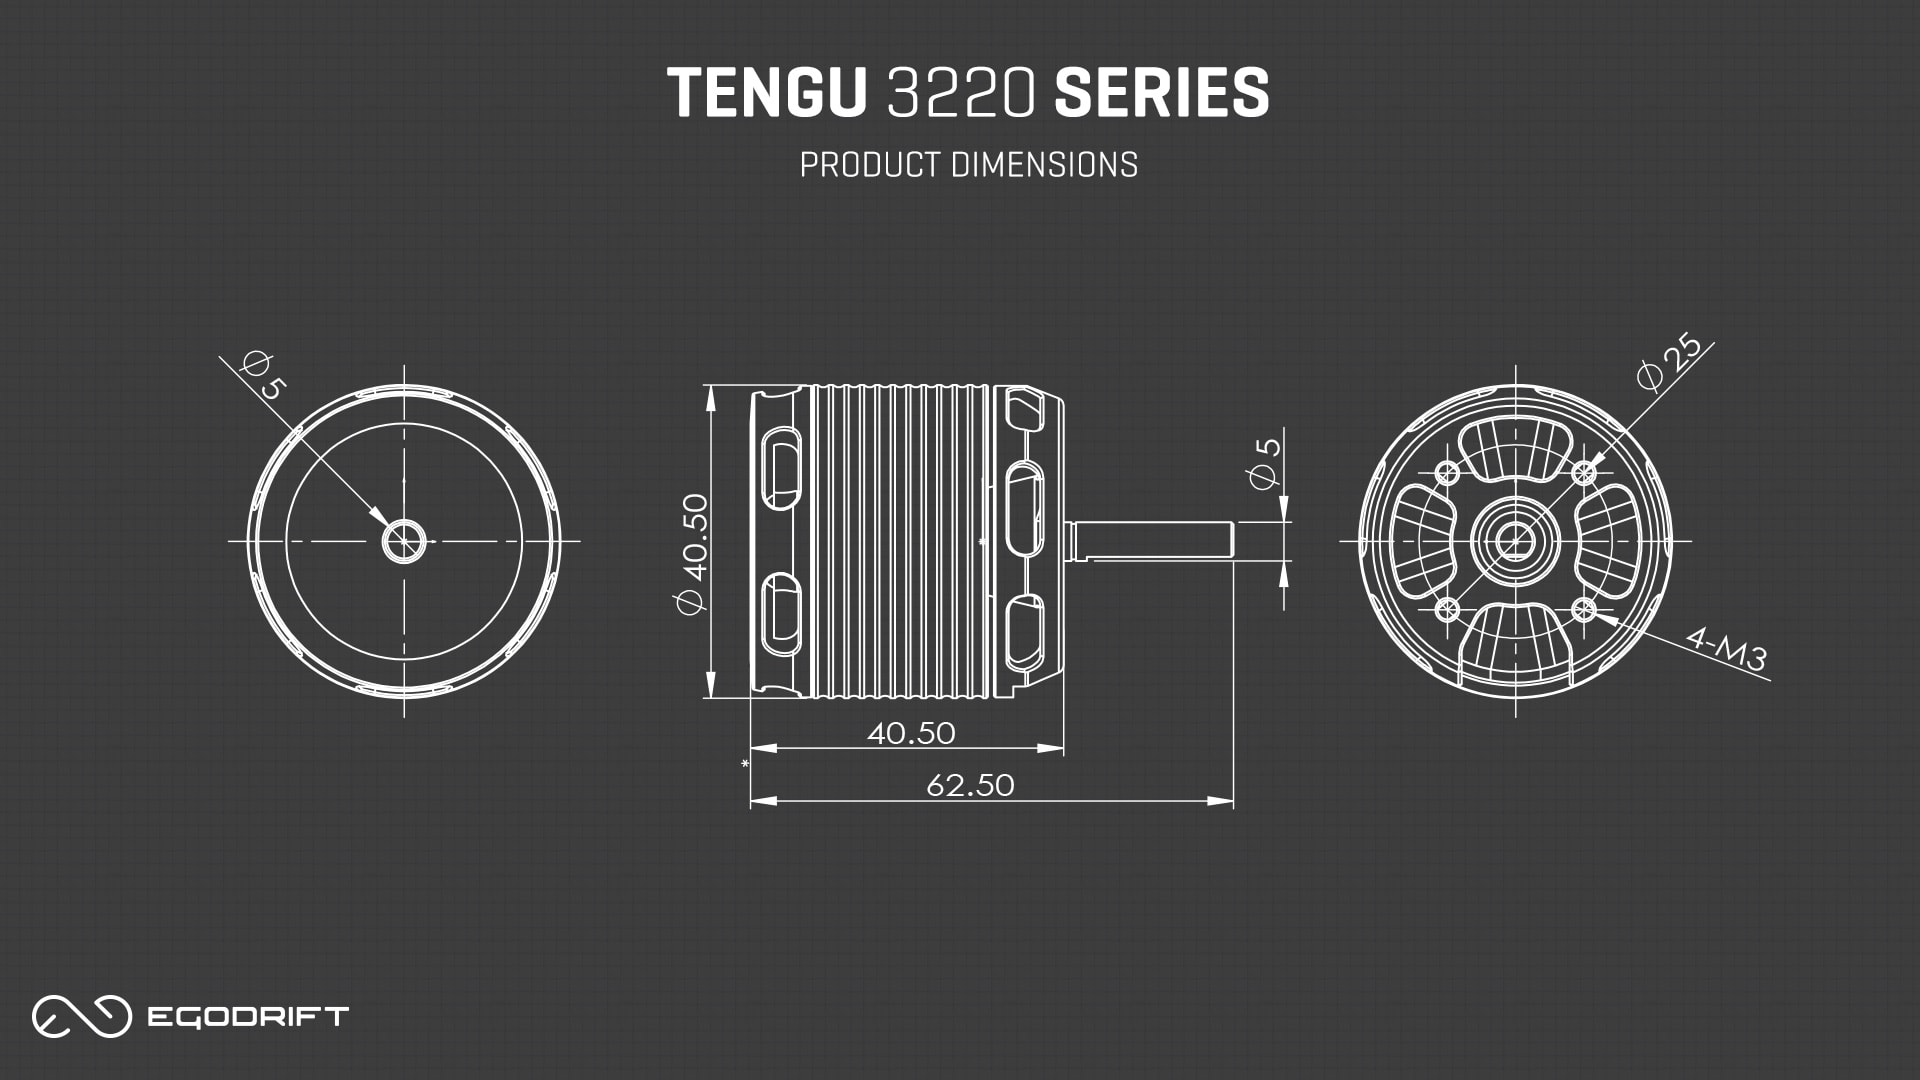 EGODRIFT Tengu 3220 Series Product Dimensions